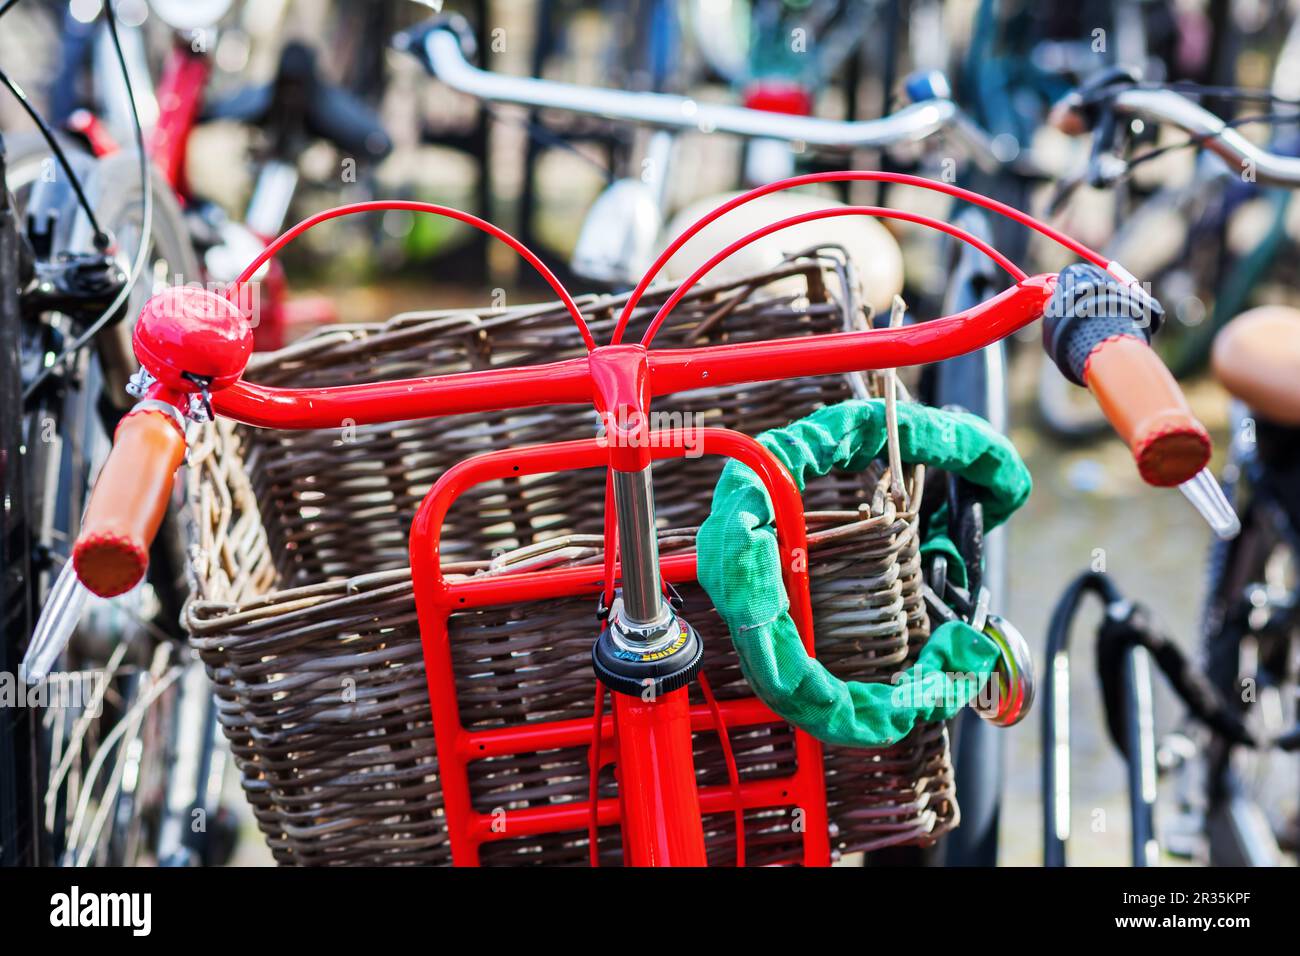 Vélo rouge dans un parking pour vélos Banque D'Images